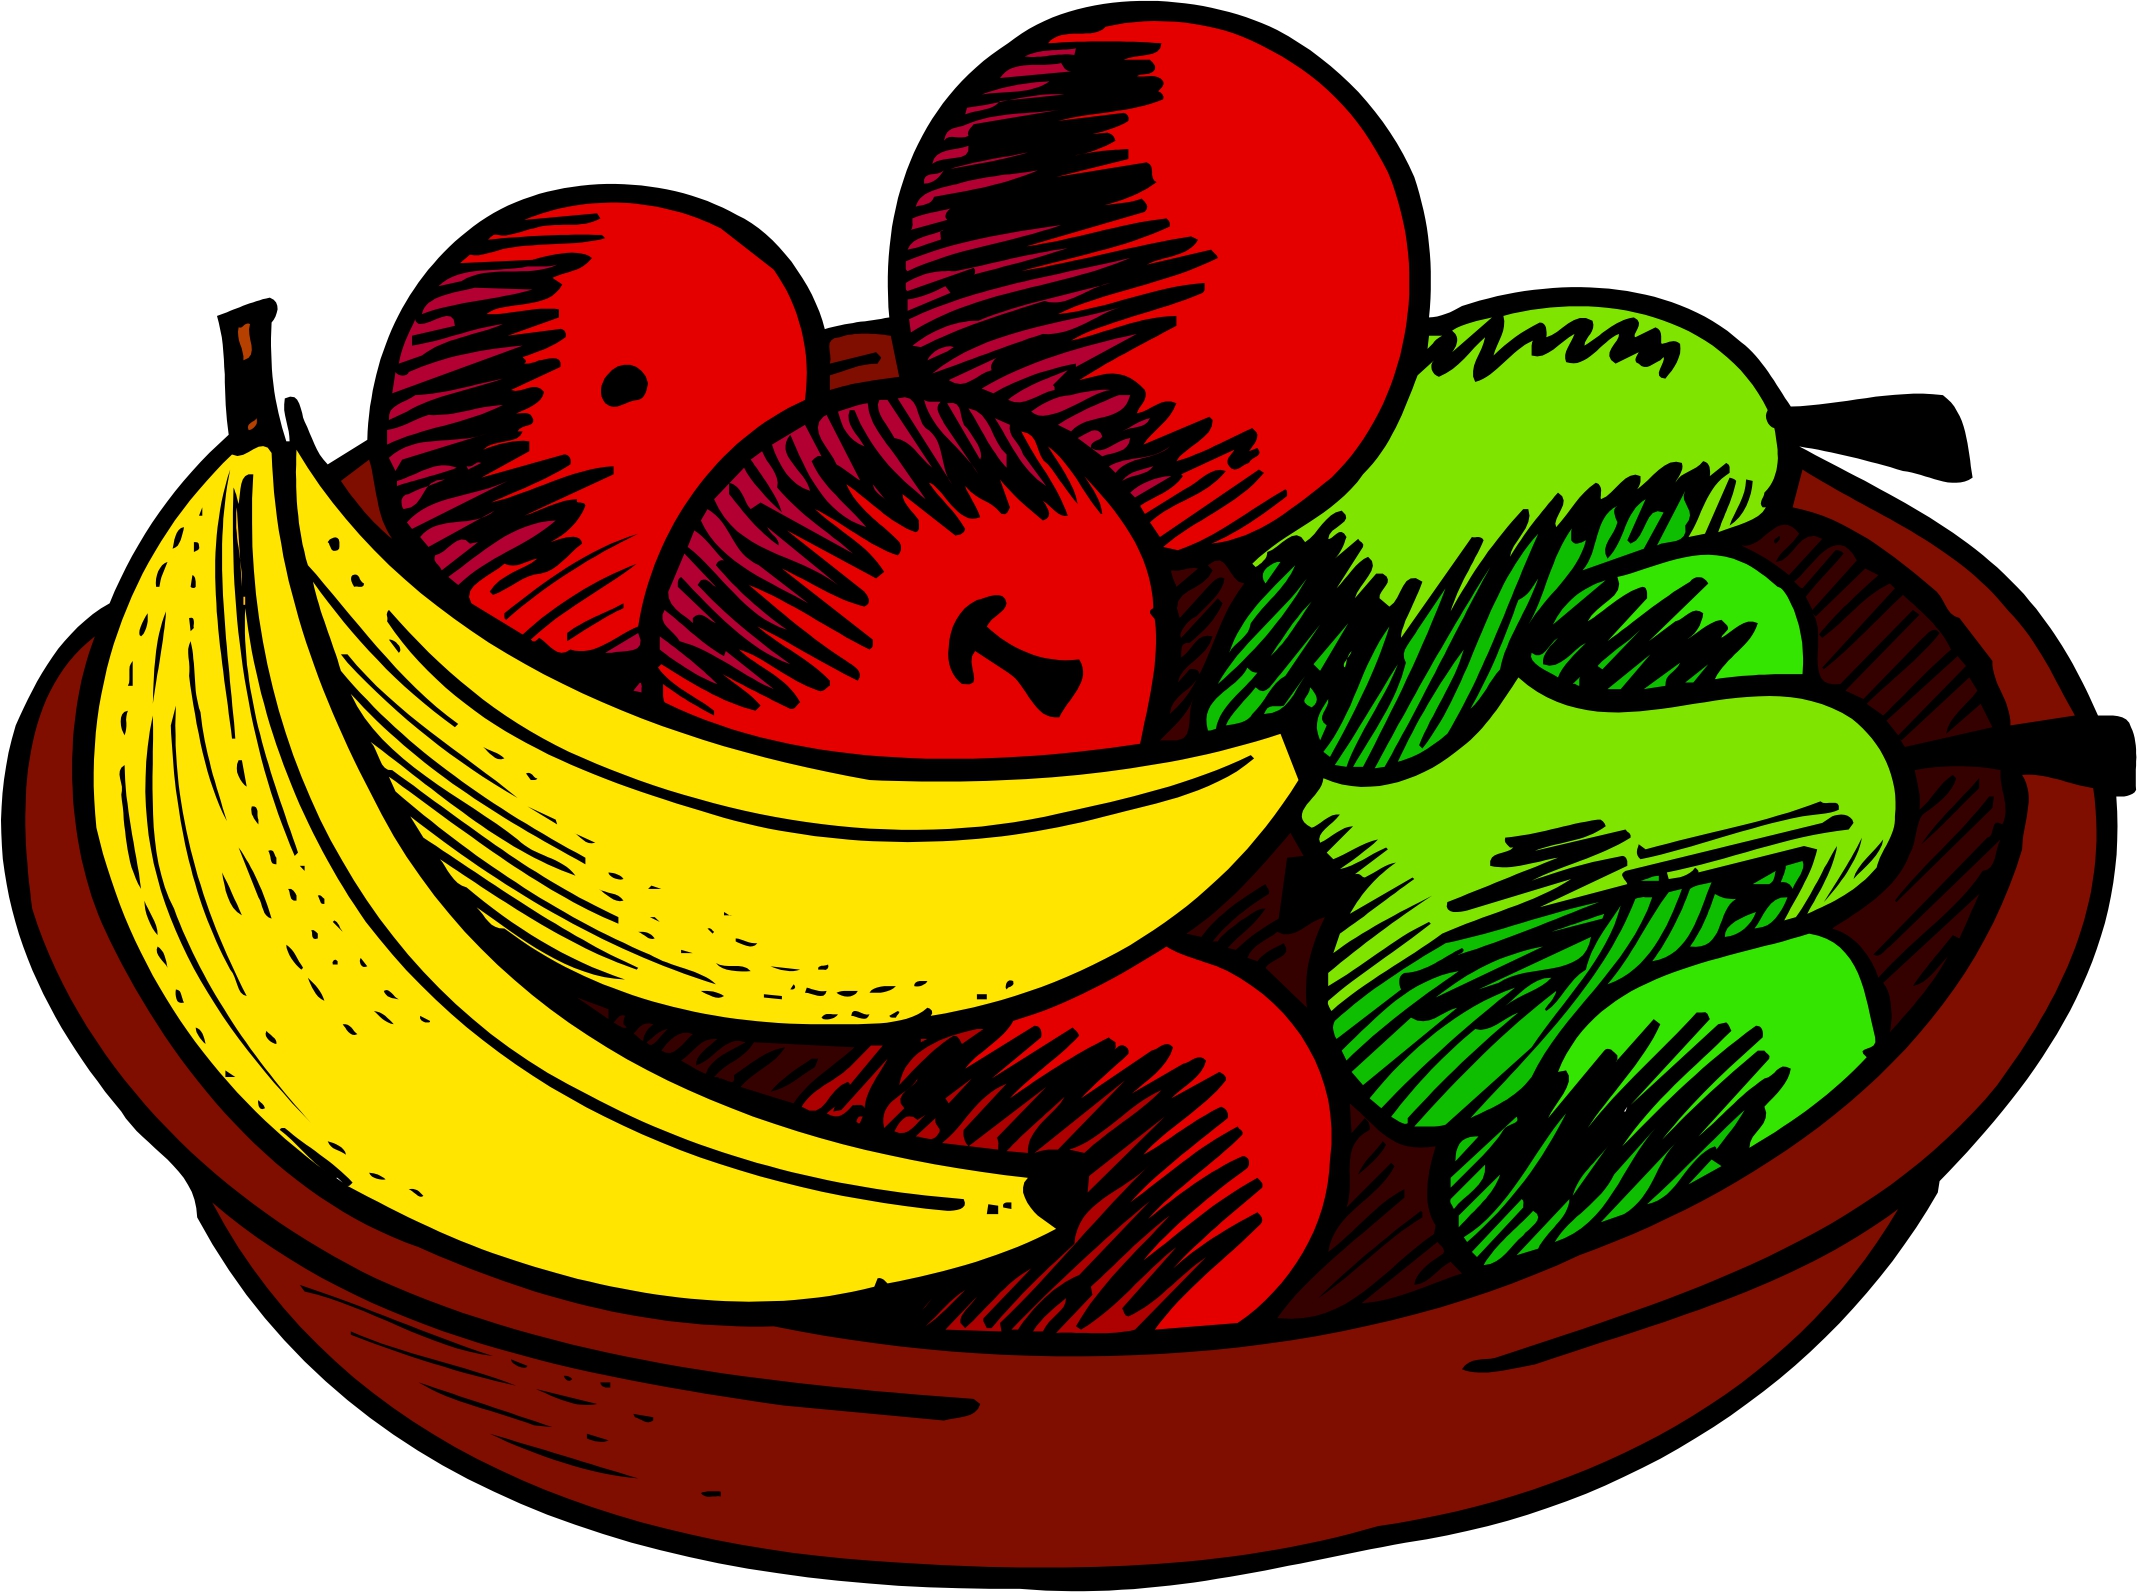 bowl of fruits clipart preschool